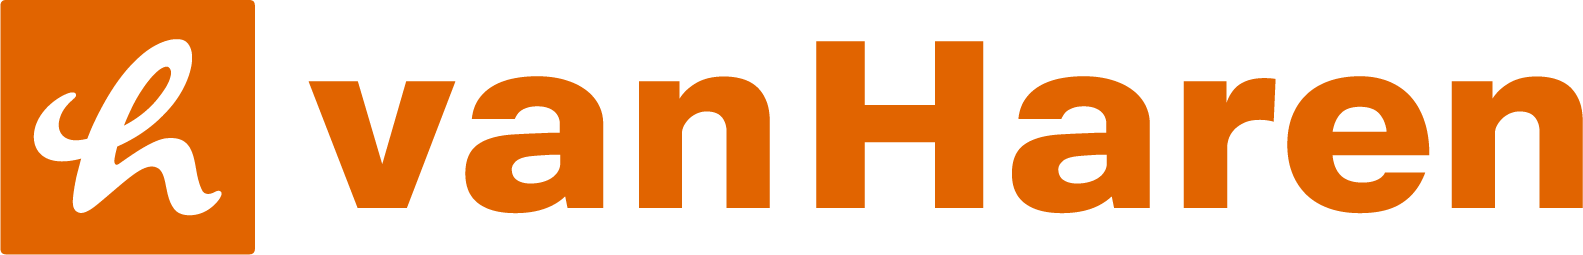 Van Haren logo